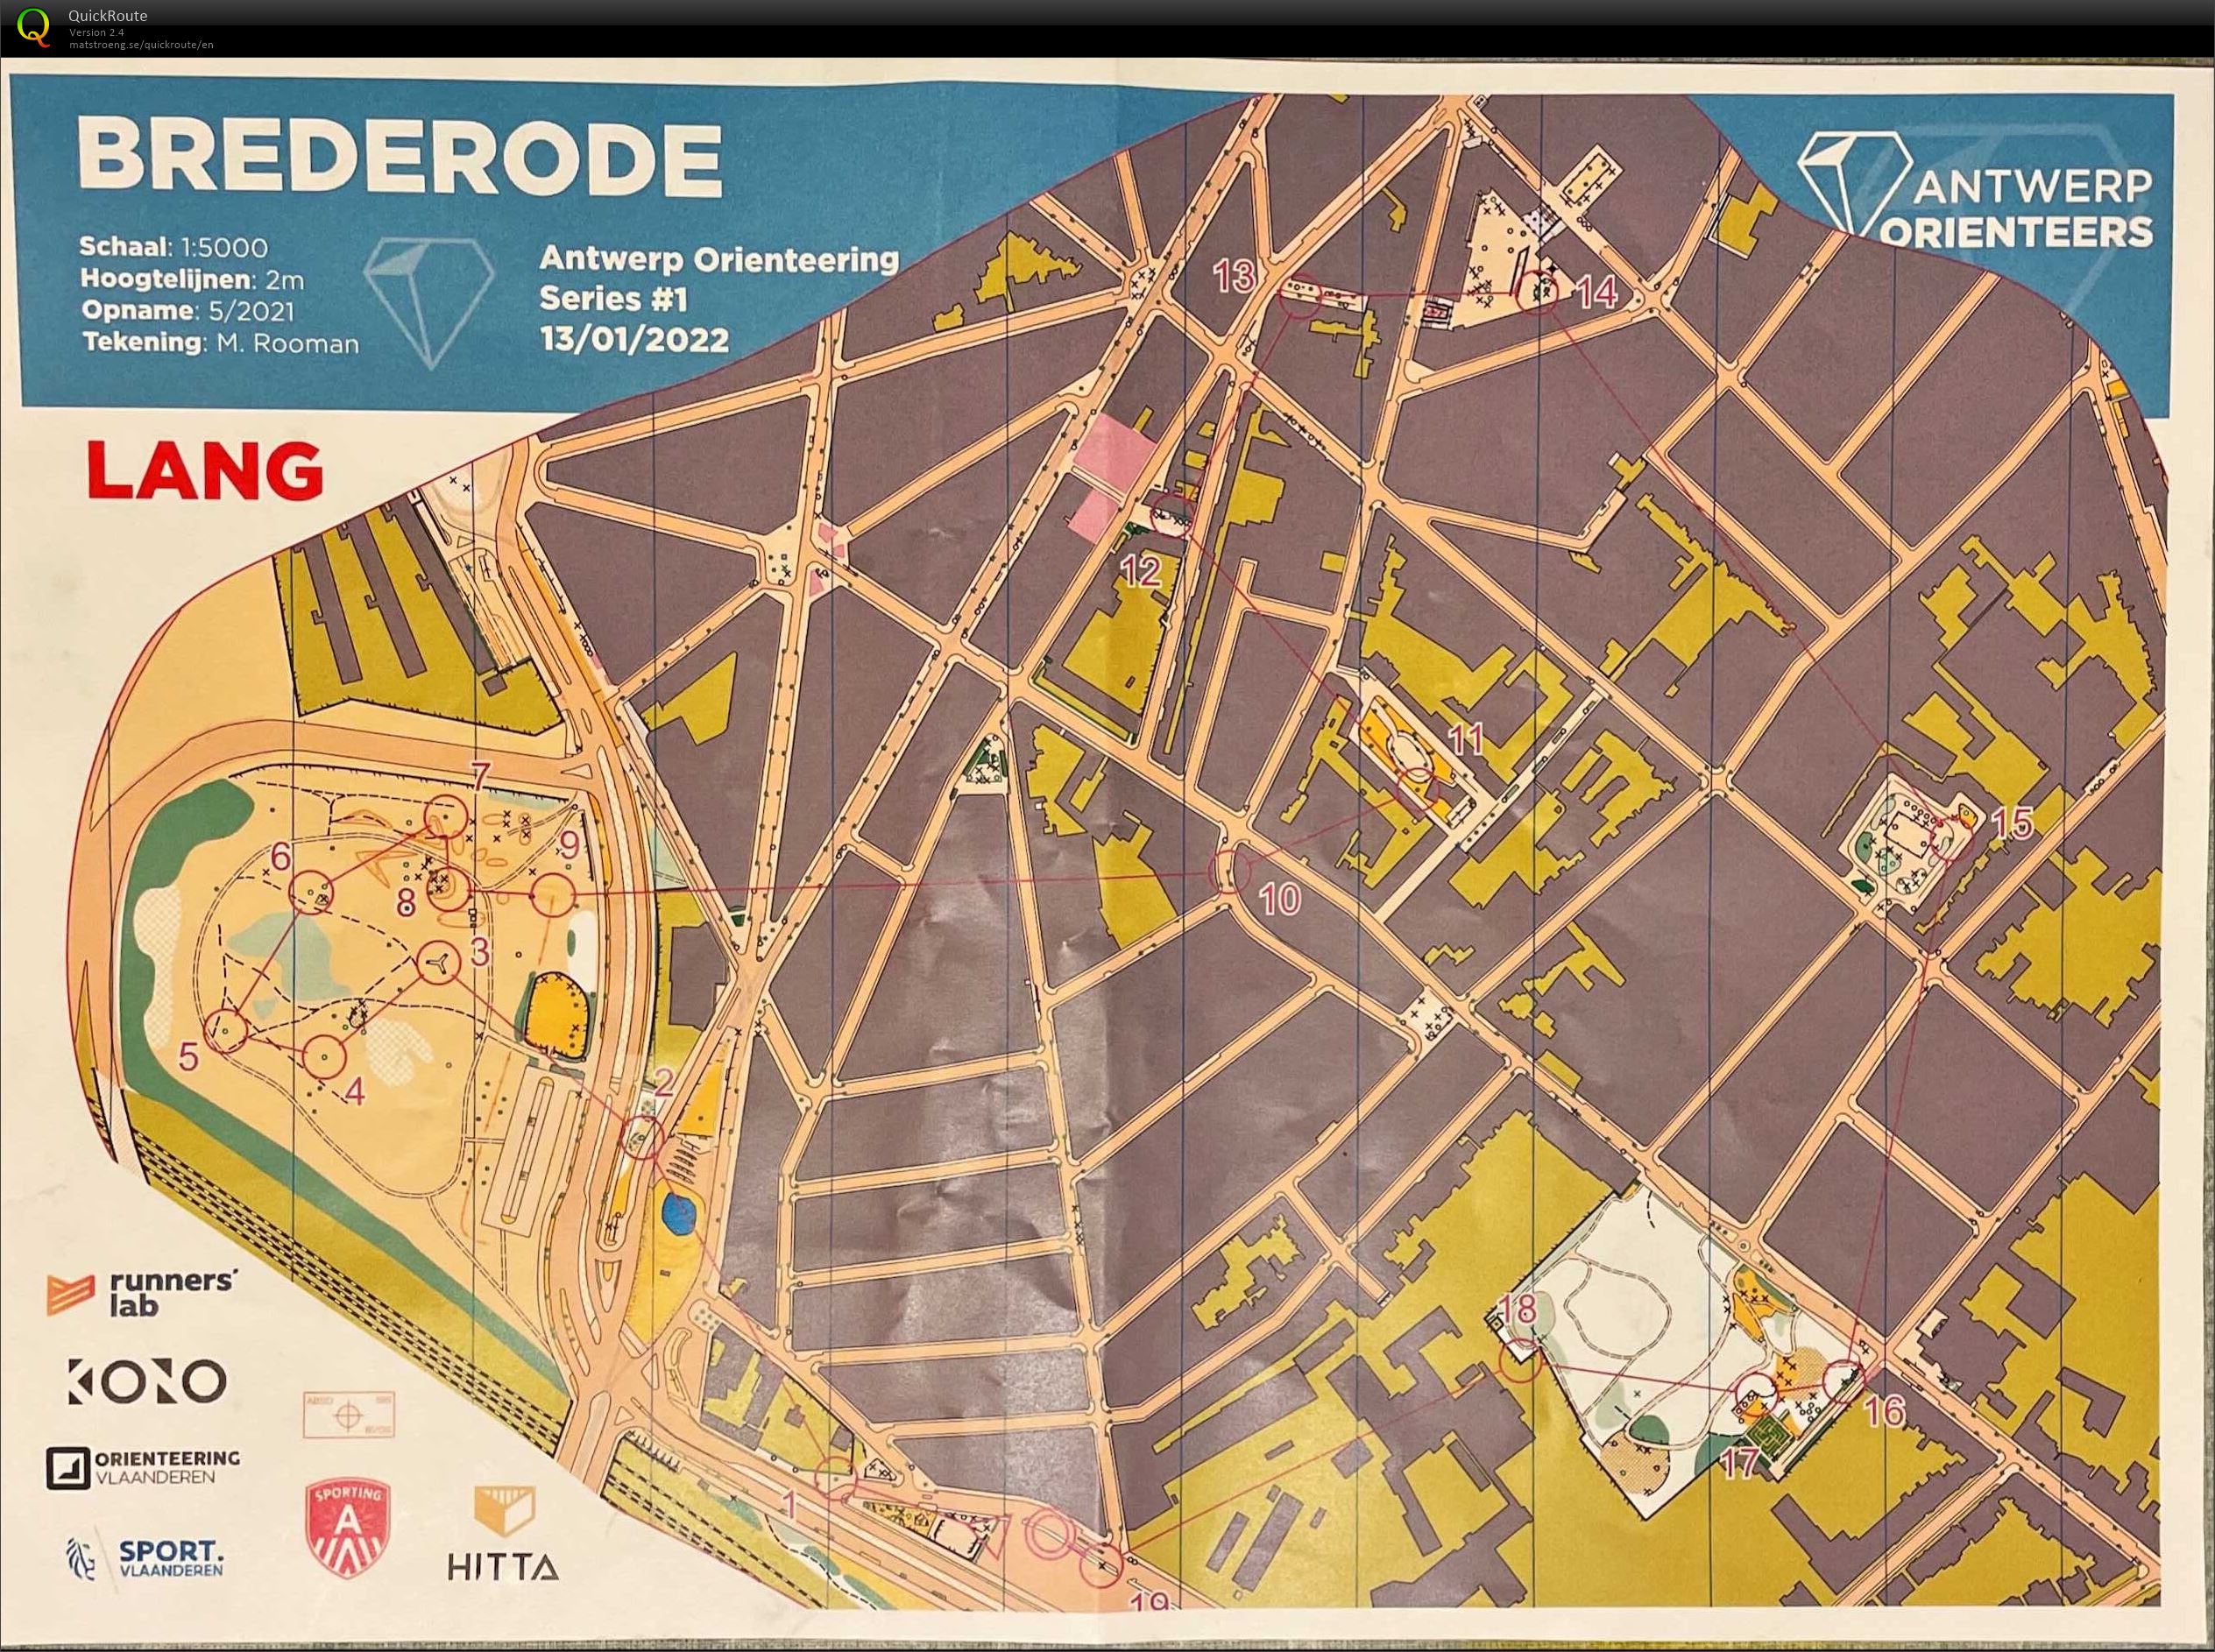 Antwerp Orienteering Series - Brederode - Lang (13/01/2022)